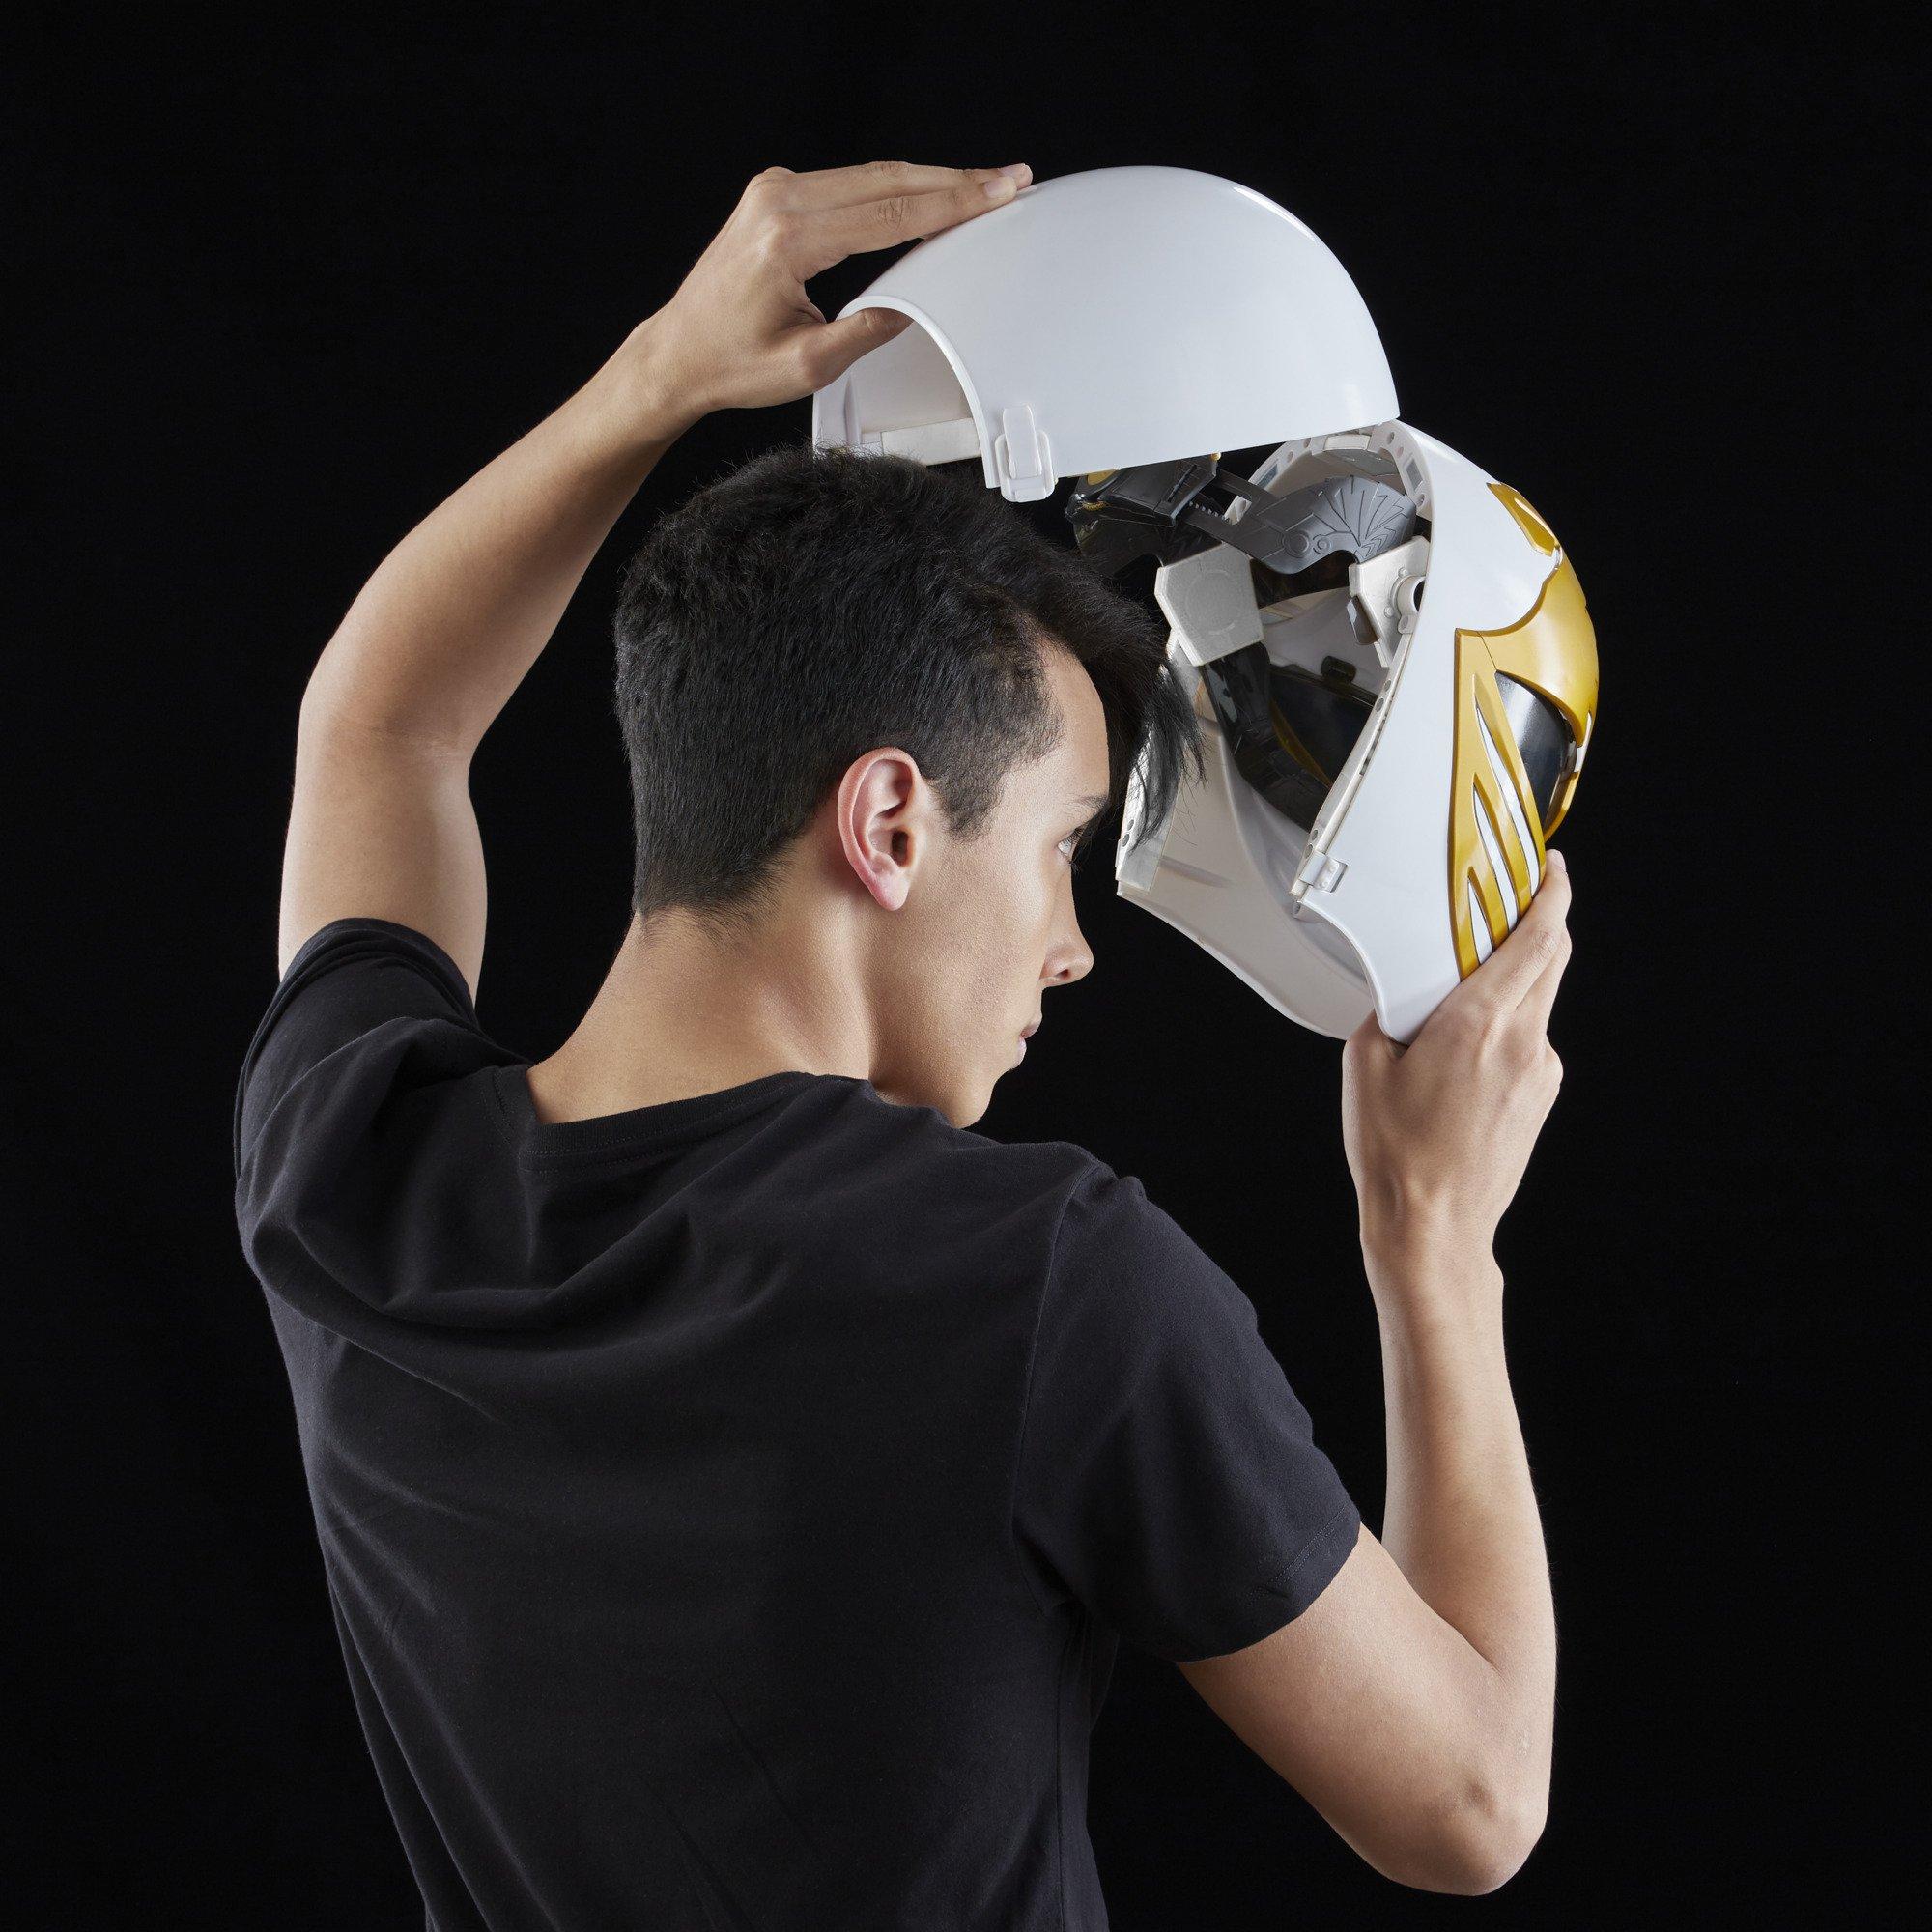 Hasbro Mighty Morphin Power Rangers Lightning Collection White Ranger Helmet